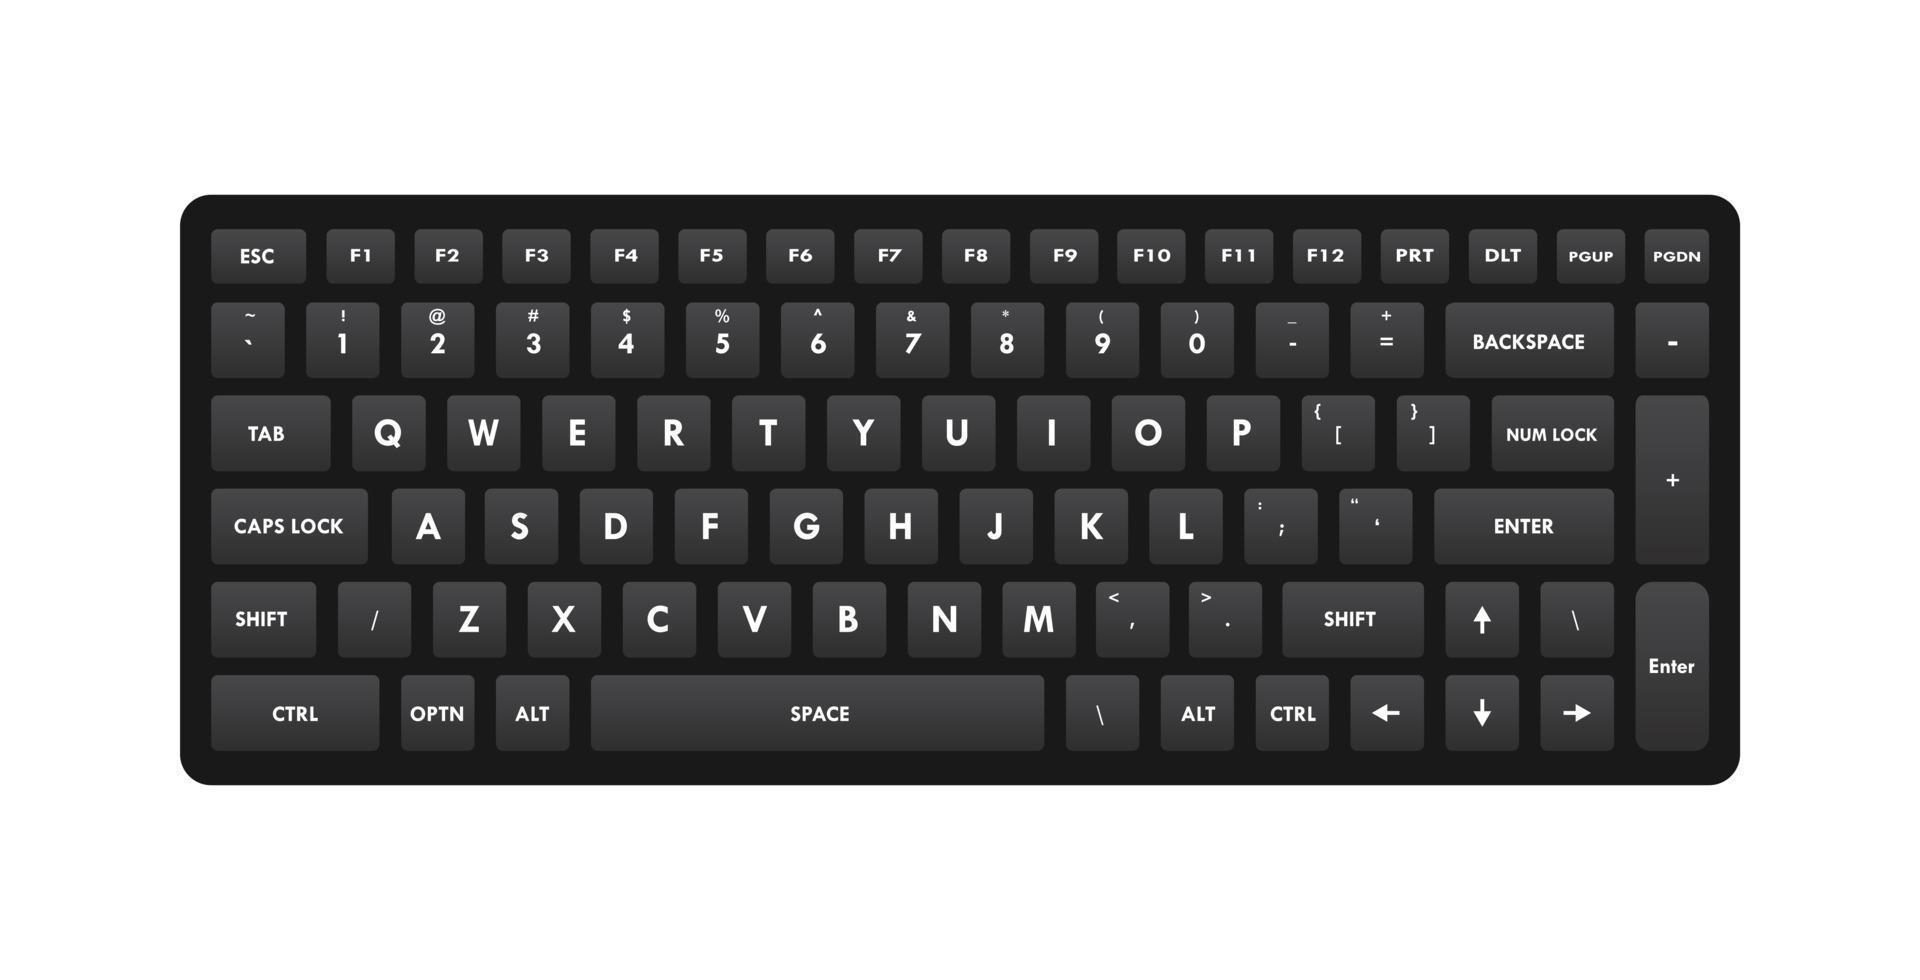 noir clavier qwerty clés réaliste vecteur illustration